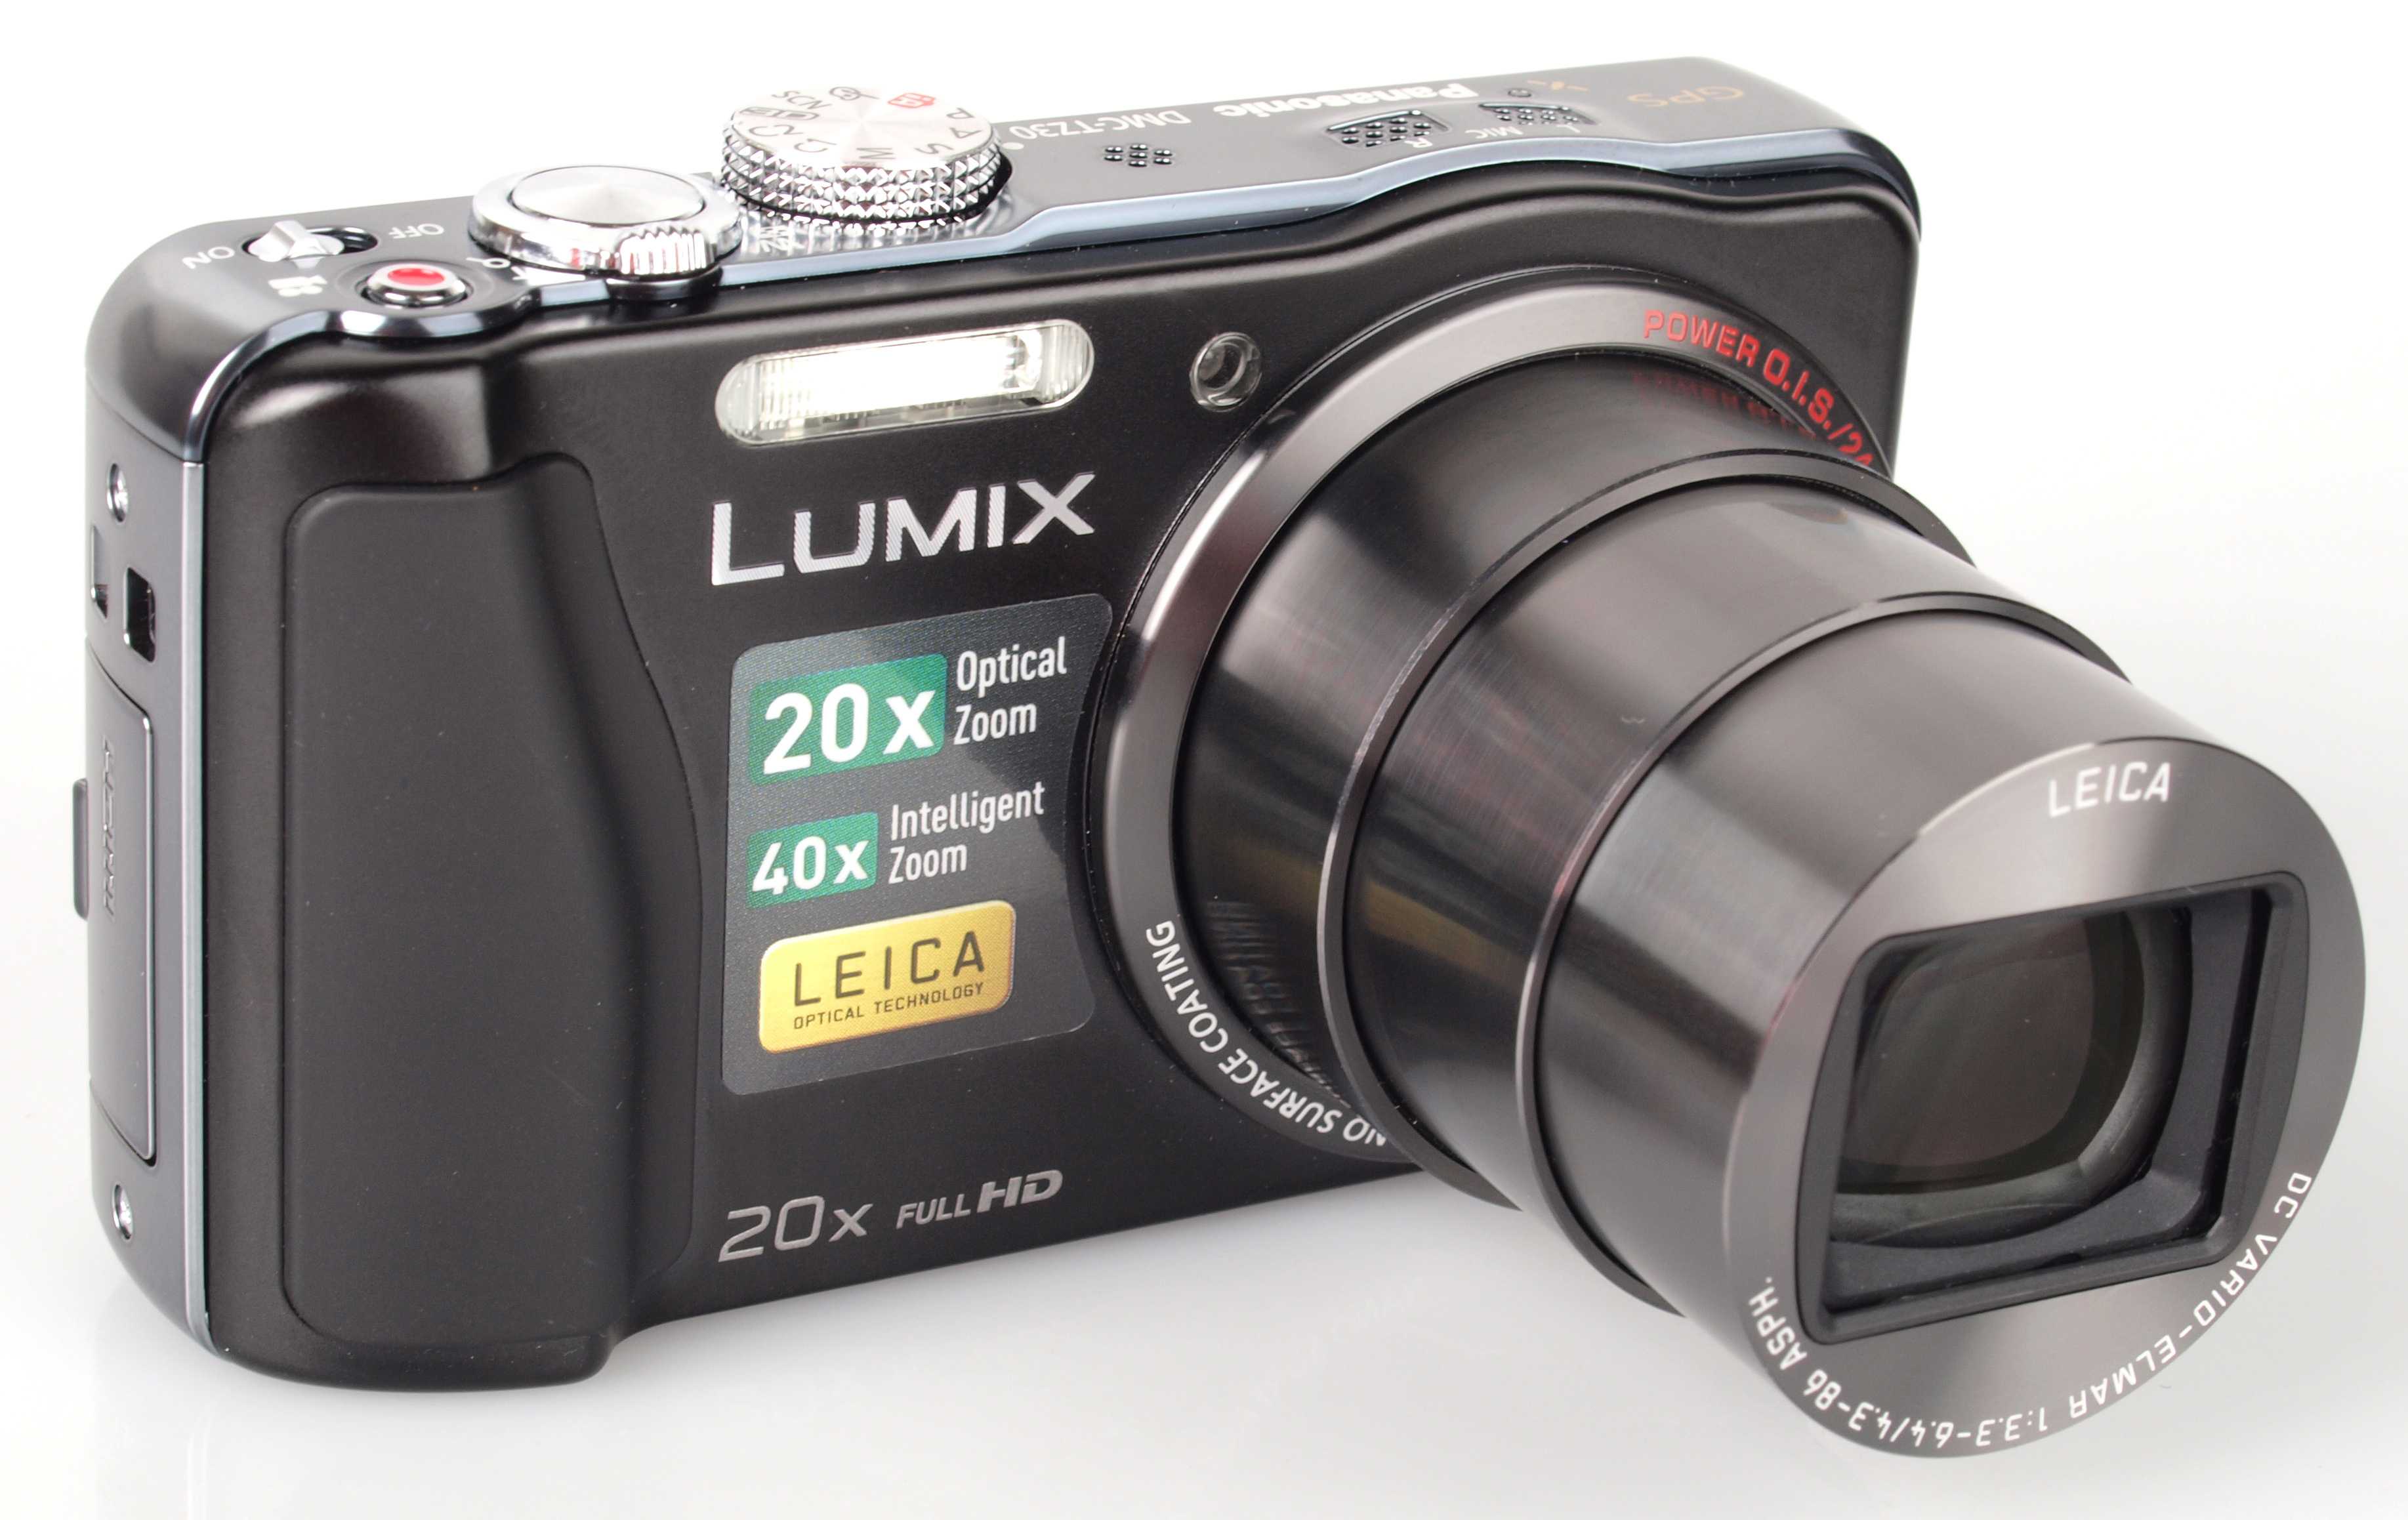 Фотоаппарат панасоник lumix dmc-tz8 купить недорого в москве, цена 2021, отзывы г. москва